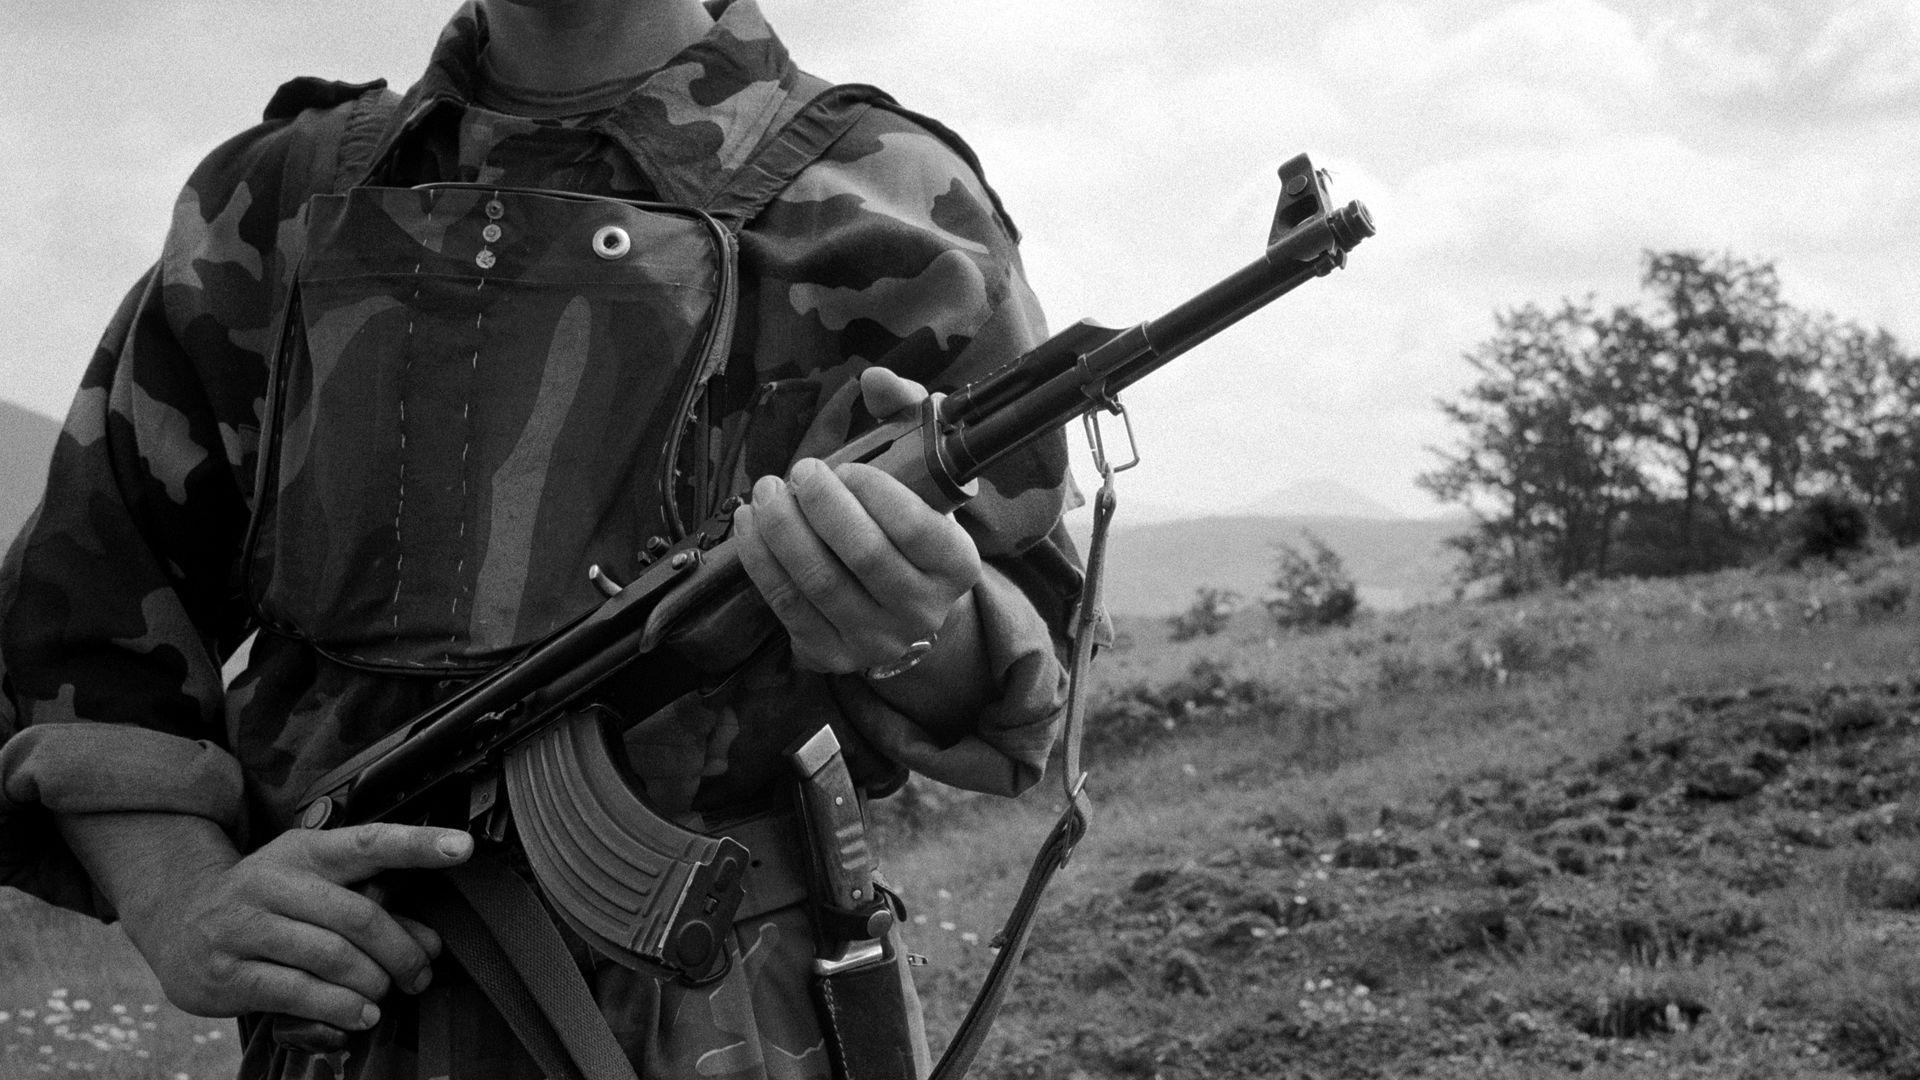 جندي من كوسوفو يحمل سلاحاً- صورة بالأبيض والأسود تعود إلى يونيو 1999